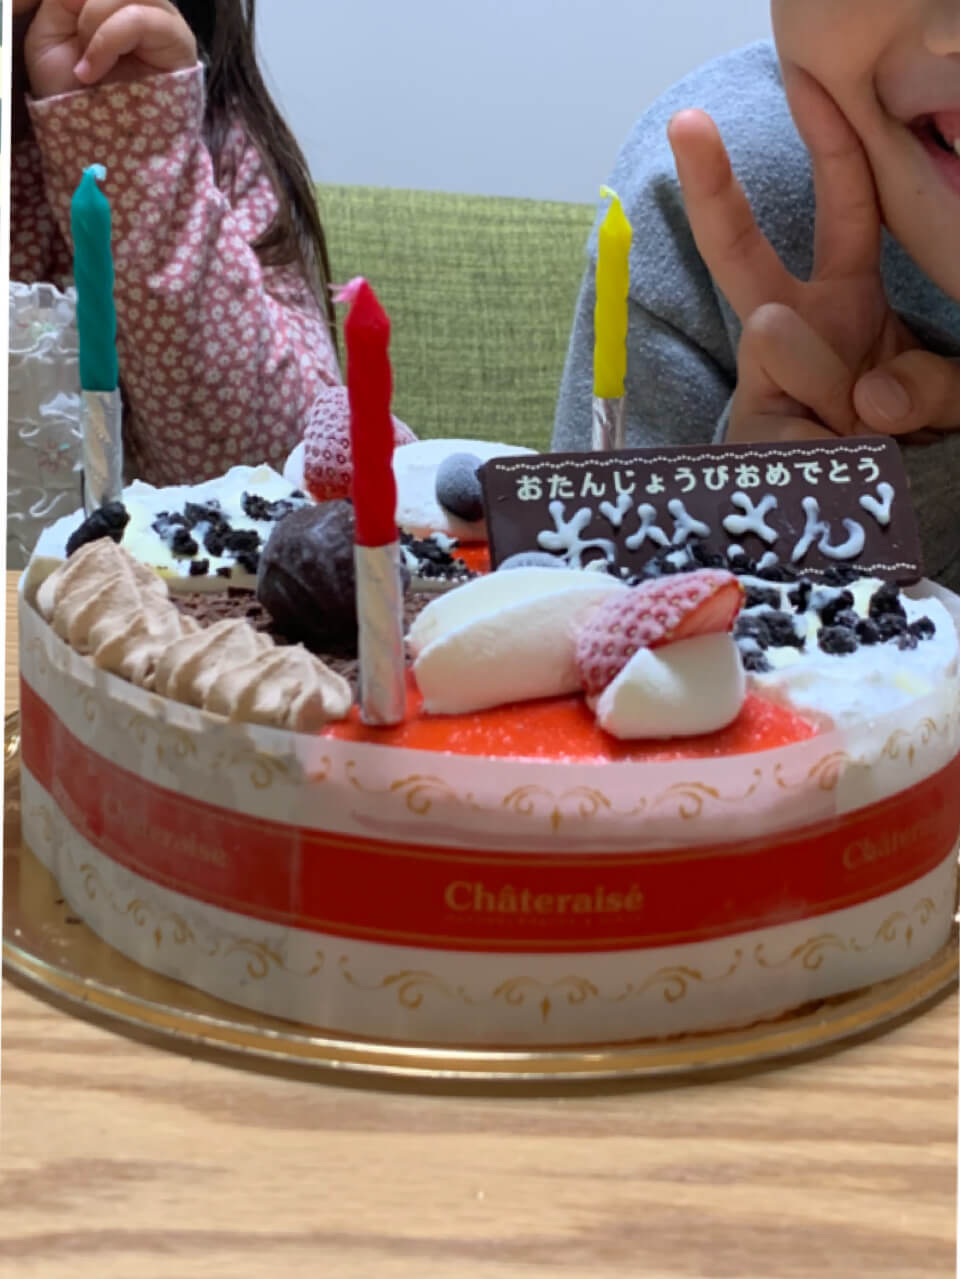 シャトレーゼのアイスケーキでお誕生日 Lee